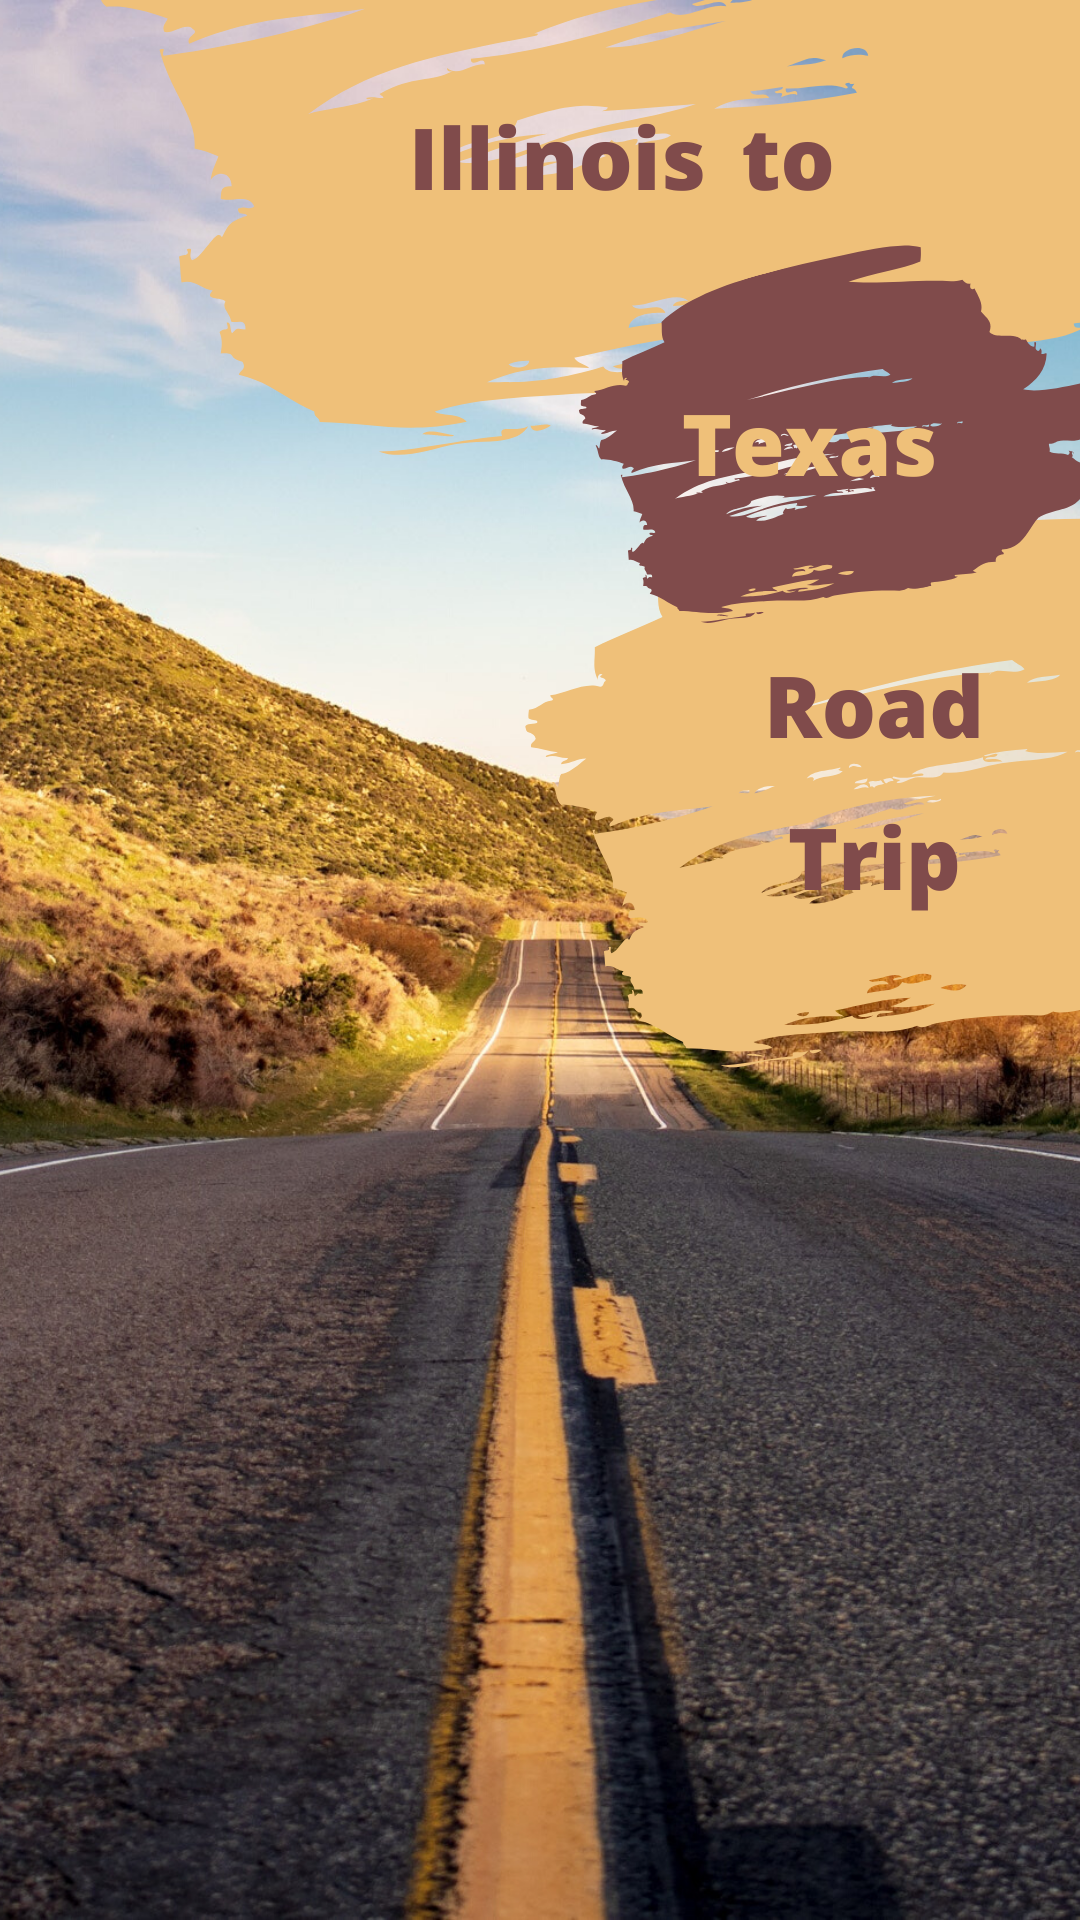 Illinois to Texas Road Trip #illinois #texas #roadtrip #illinoistotexas